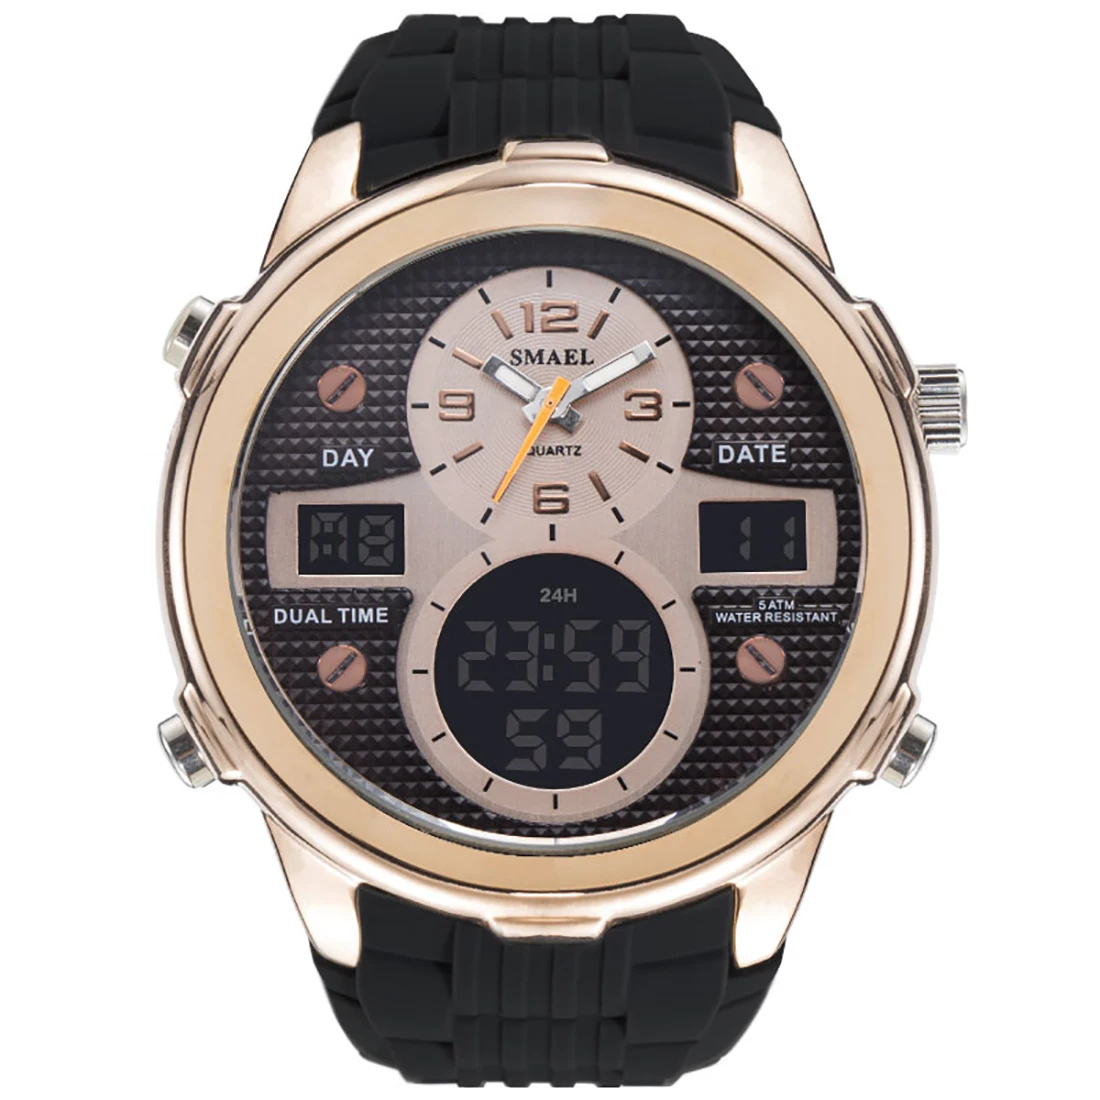 Для мужчин наручные часы светодио дный цифровой спортивные часы большие Masculino Reloje электронные часы человек Бизнес Формальные Relojes Hombre 2018